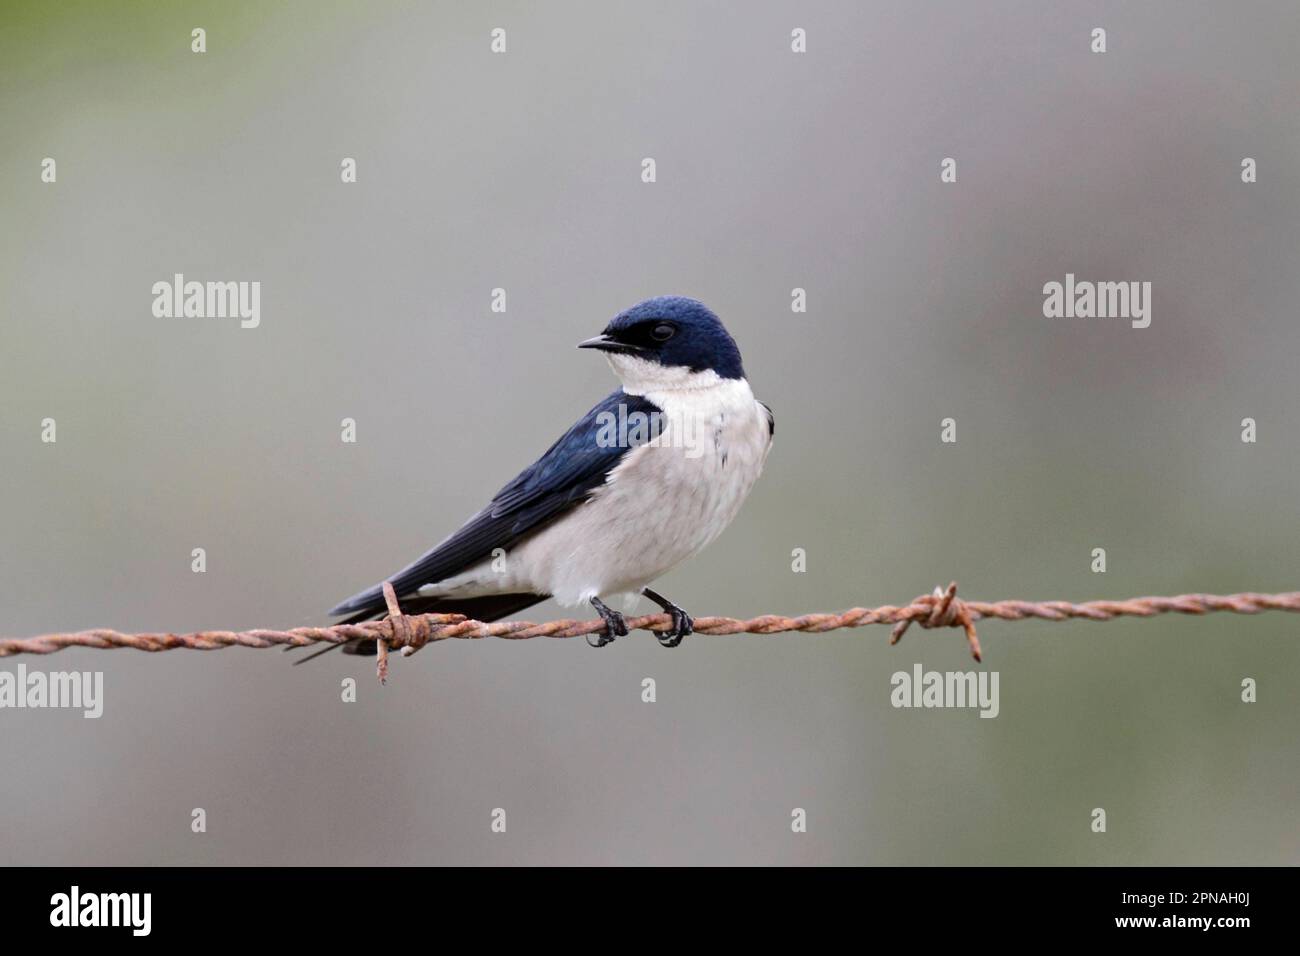 Swallow à fausses perles (Hirundo dimidiata), adulte, perchée sur un fil barbelé, Cap-Occidental, Afrique du Sud Banque D'Images